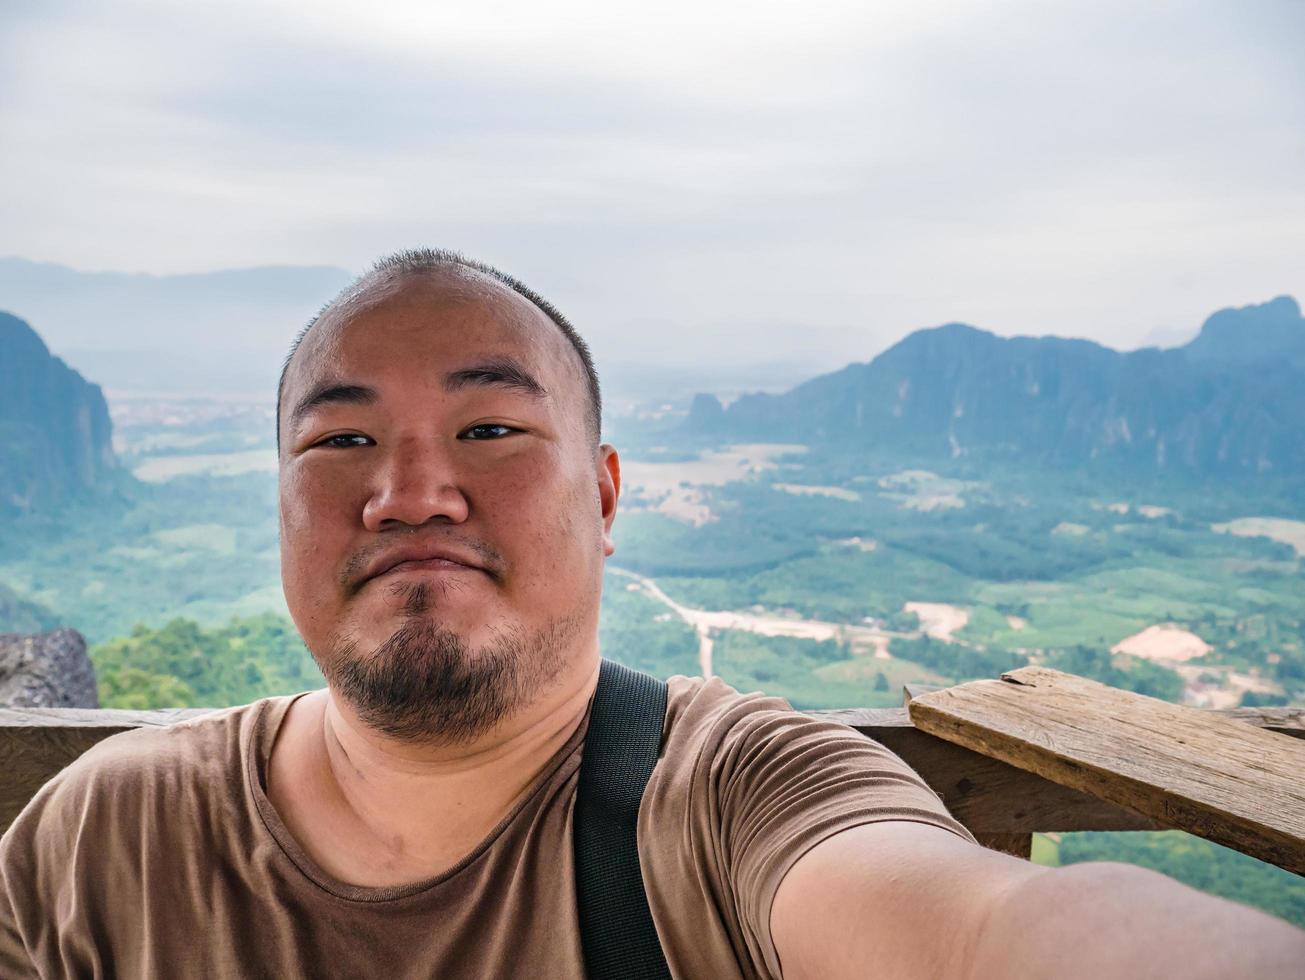 portrail photo de gros touriste avec une belle vue sur le pic de pha ngeun dans la ville de vangvieng au laos.vangvieng city la célèbre ville de destination de vacances au laos.